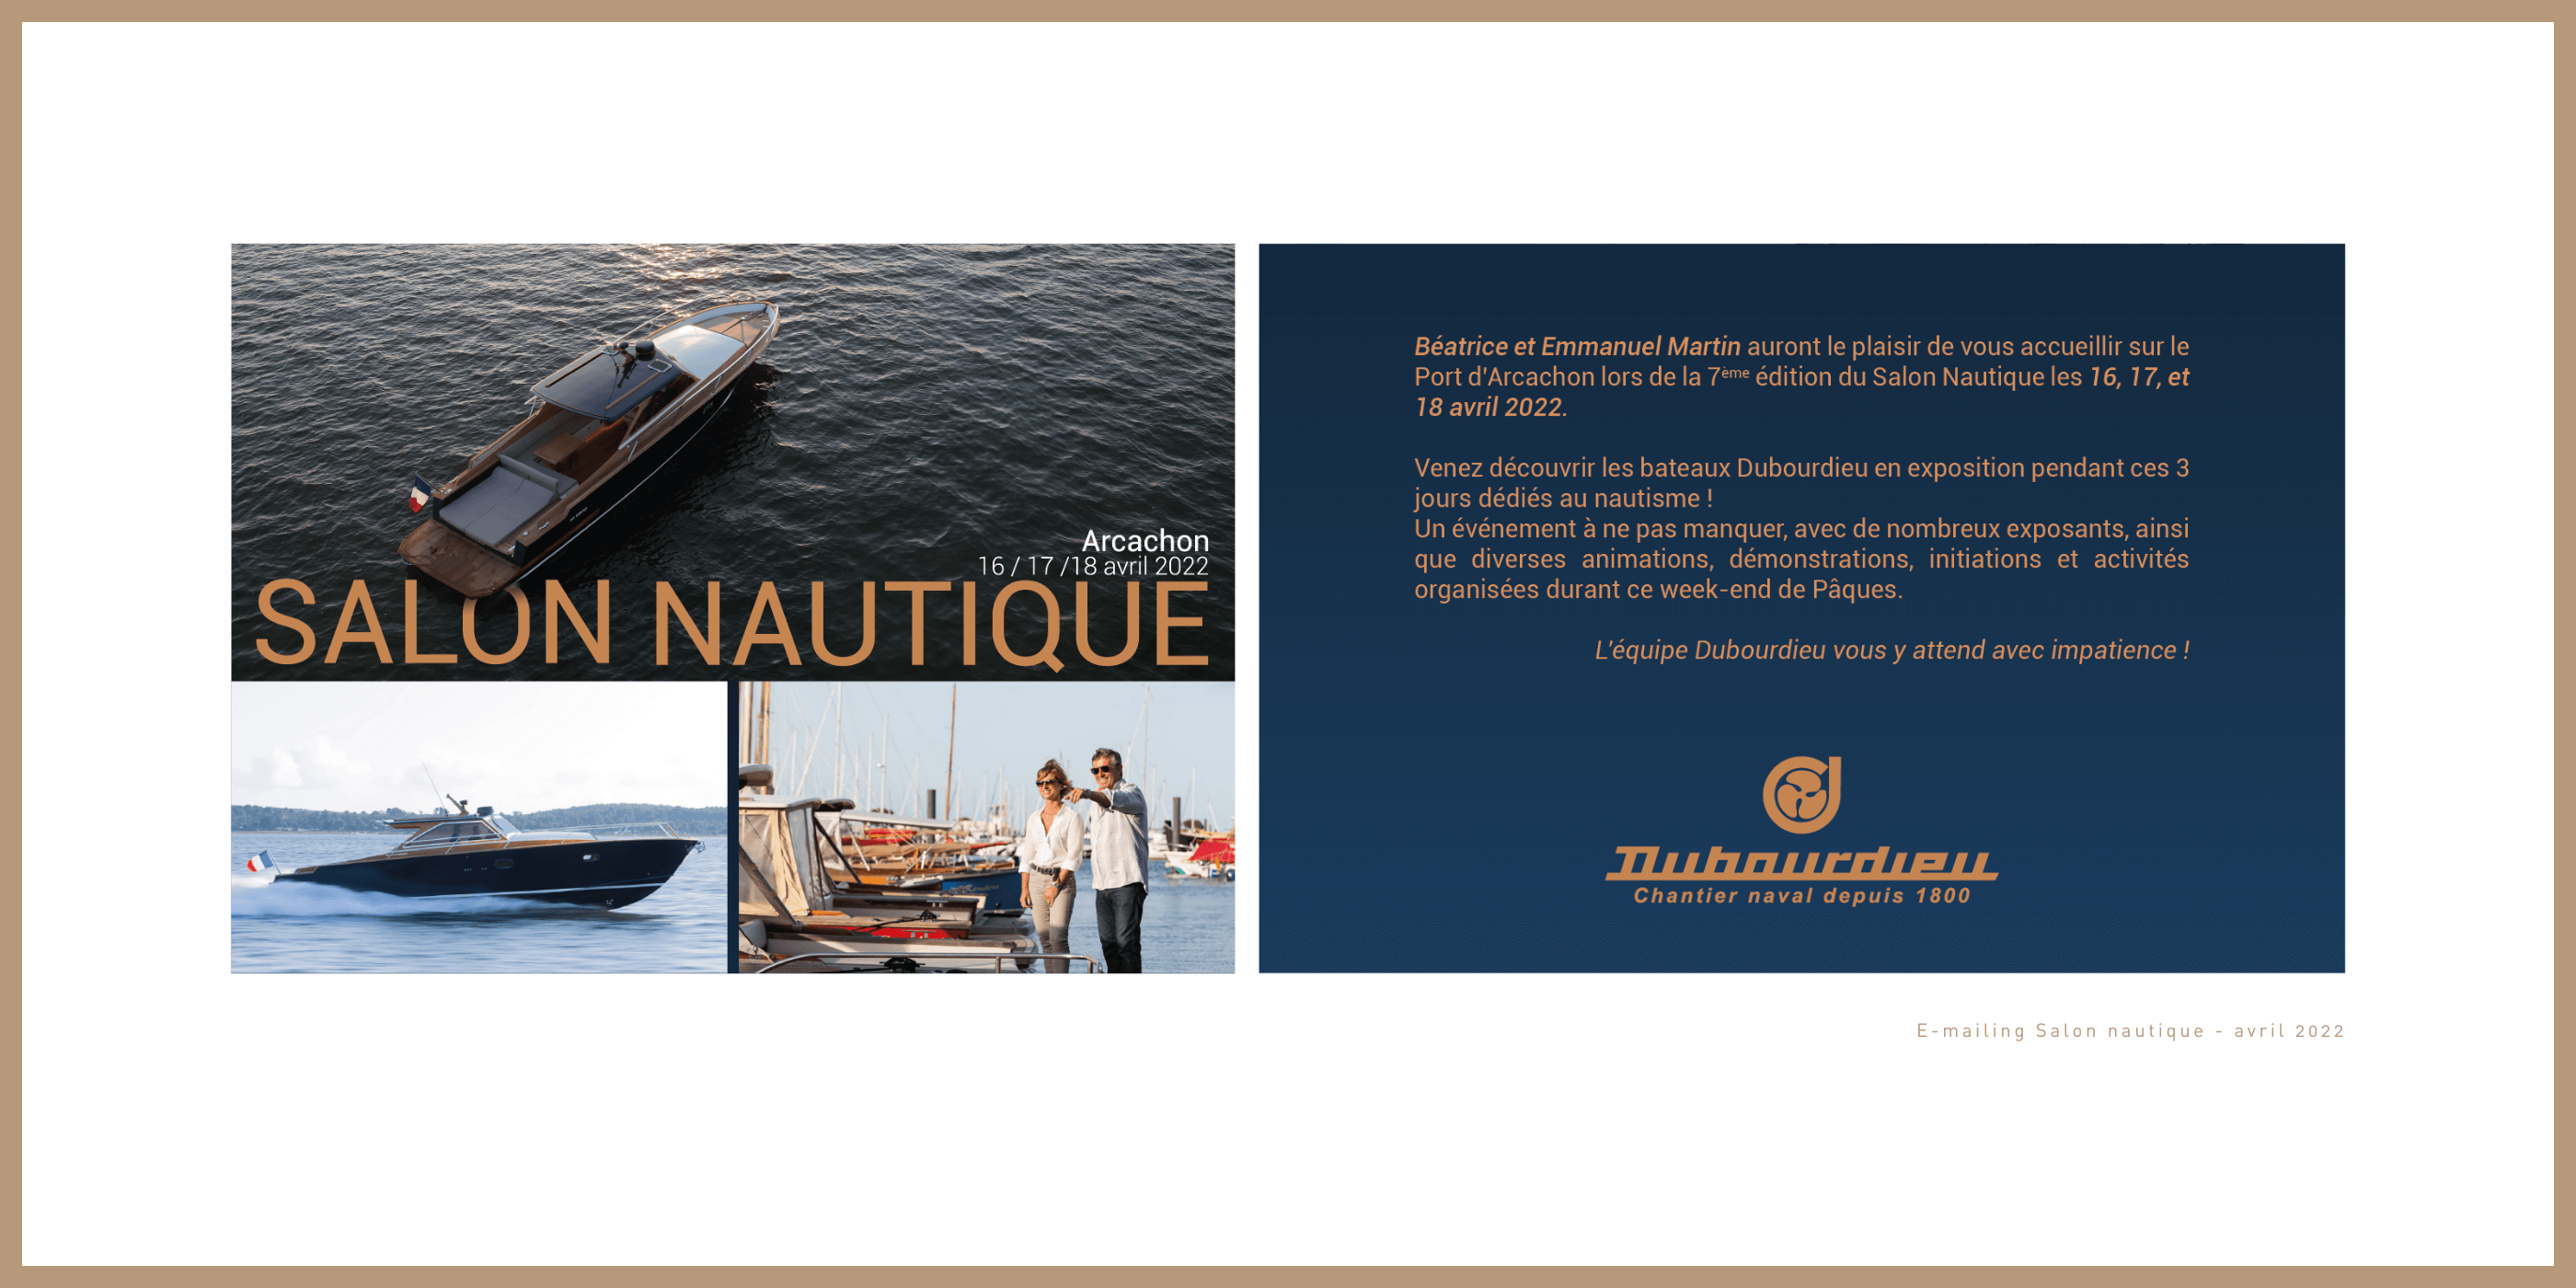 Chantier naval Dubourdieu - Whatsgoingon